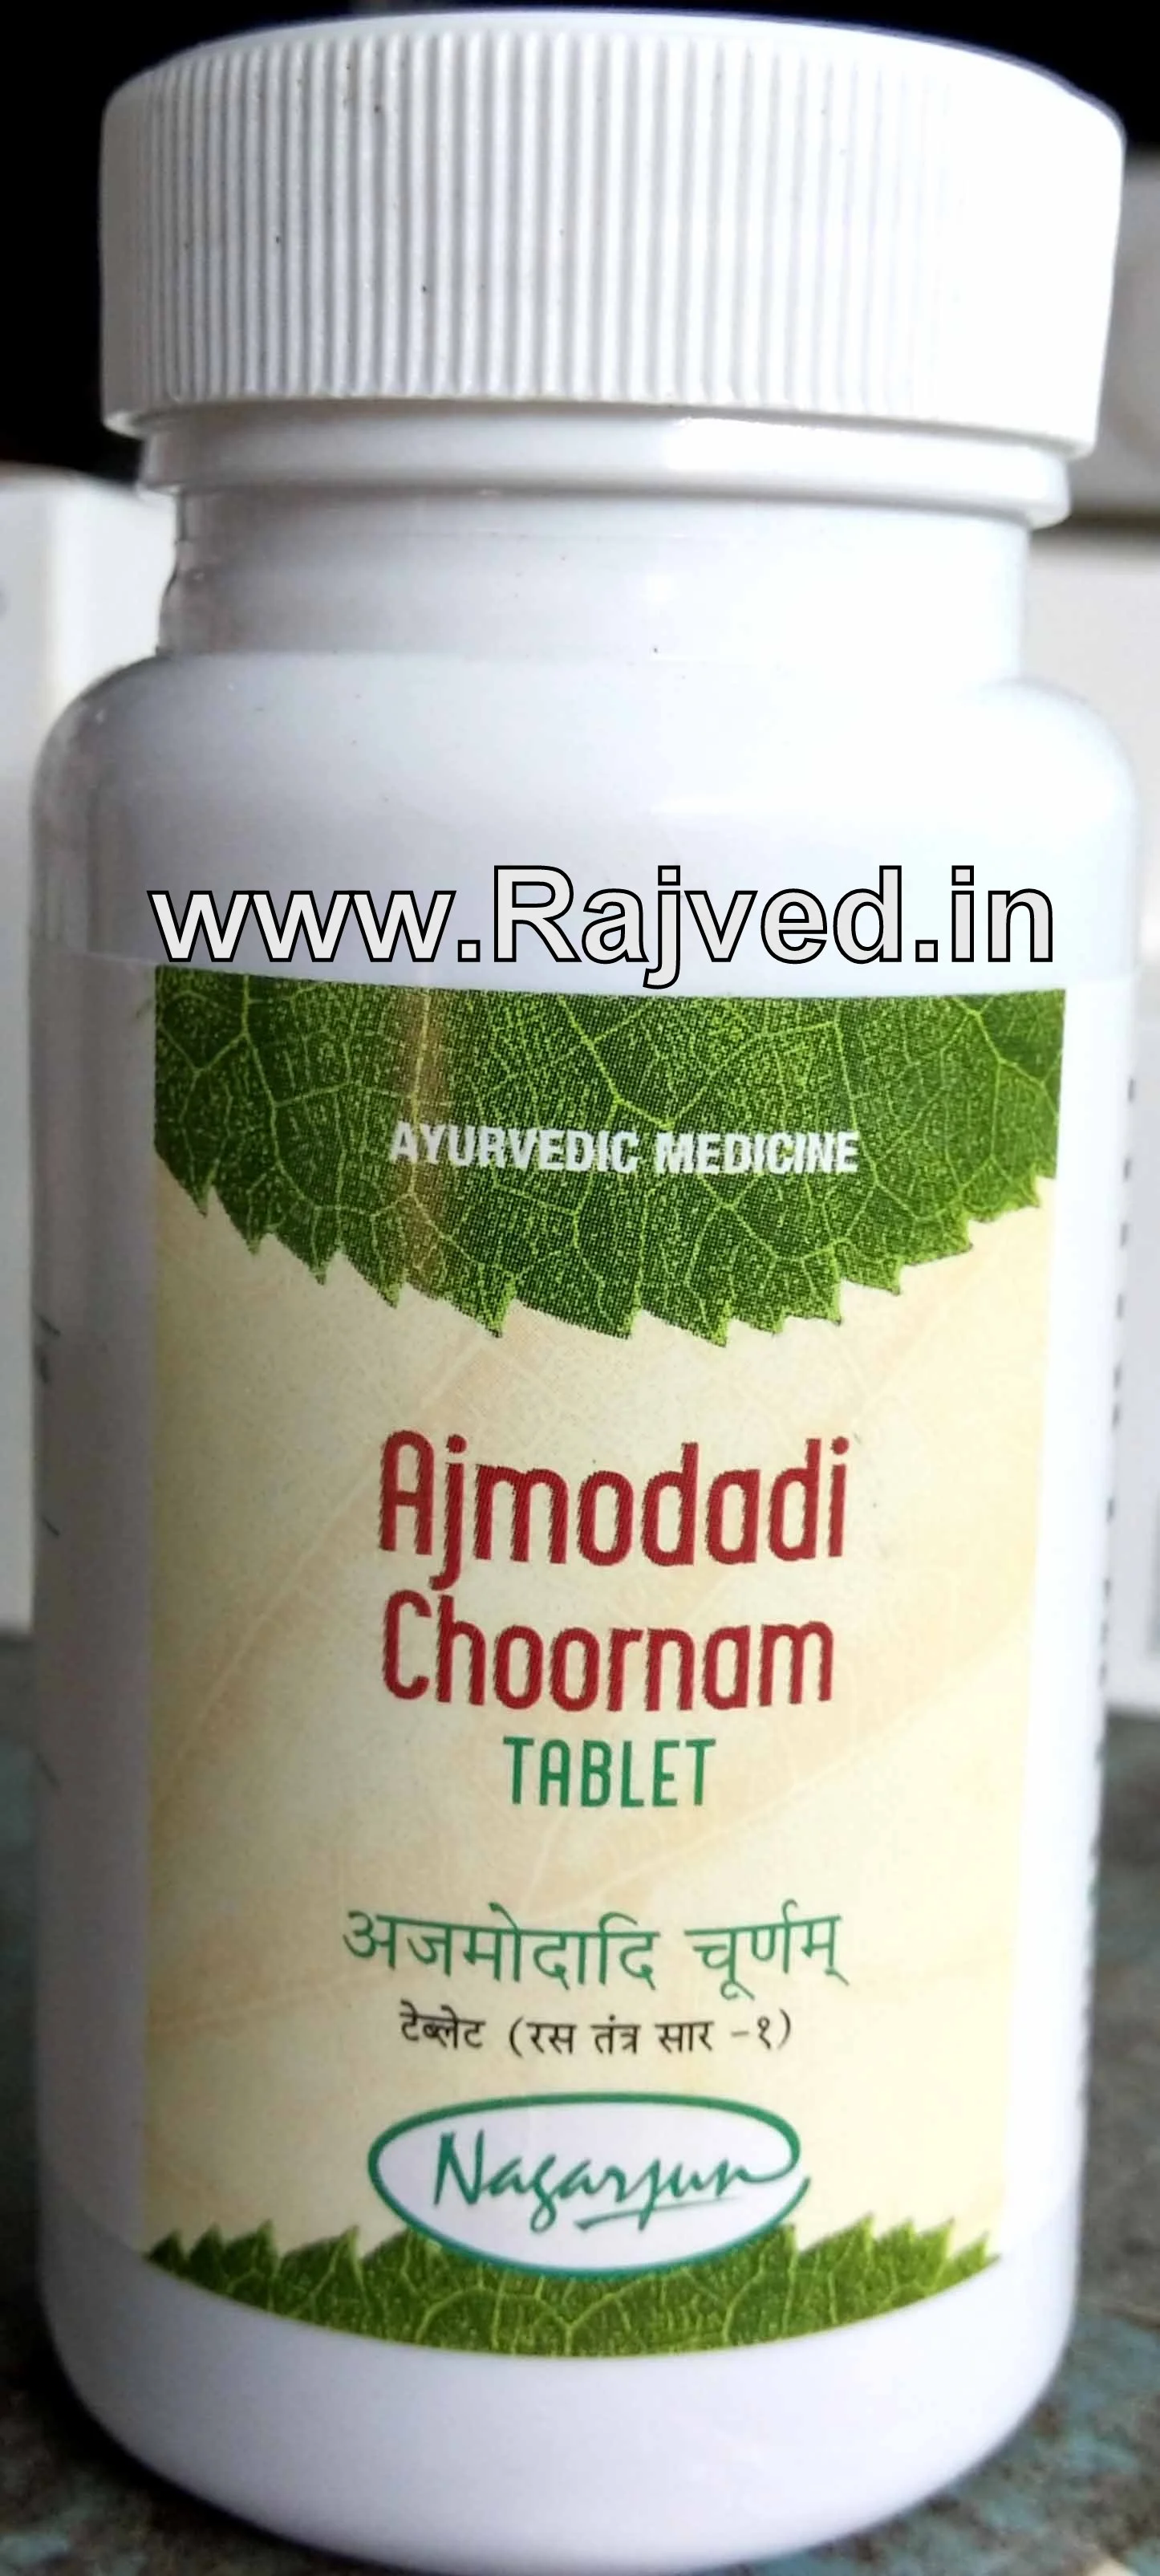 ajmodadi tablet 500 gm upto 20% off free shipping nagarjun pharma gujarat